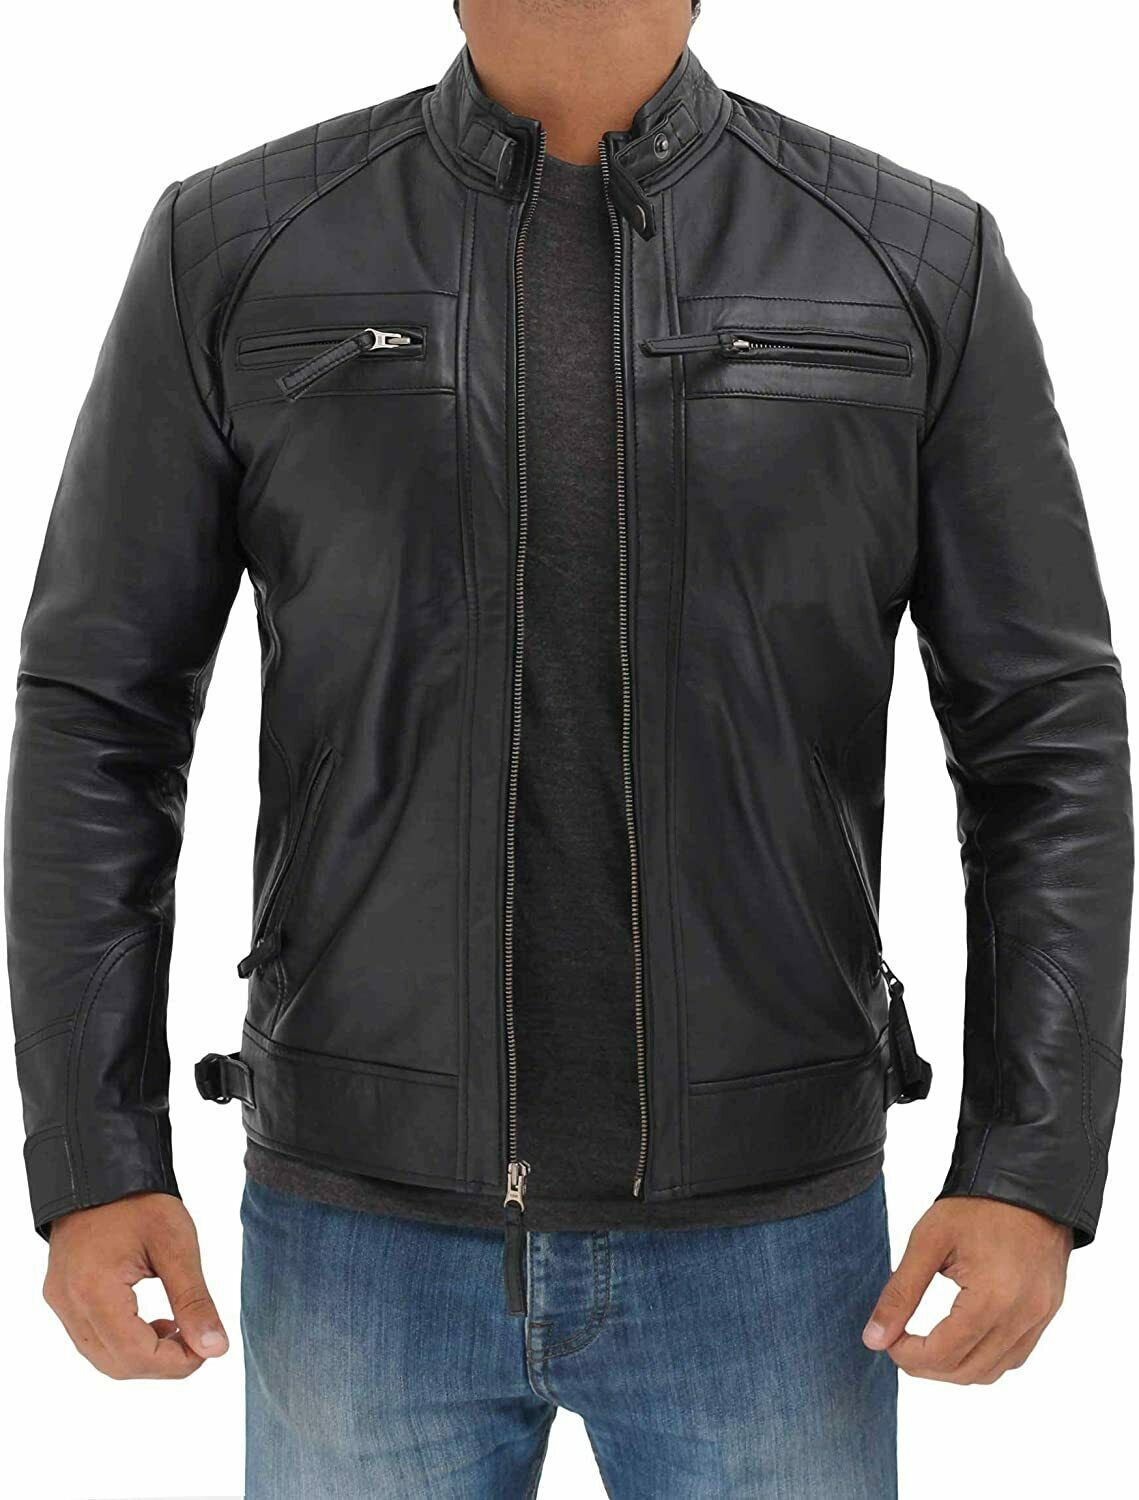 Spine Spark Men's Black Trendy Slim Fit Biker Leather Jacket